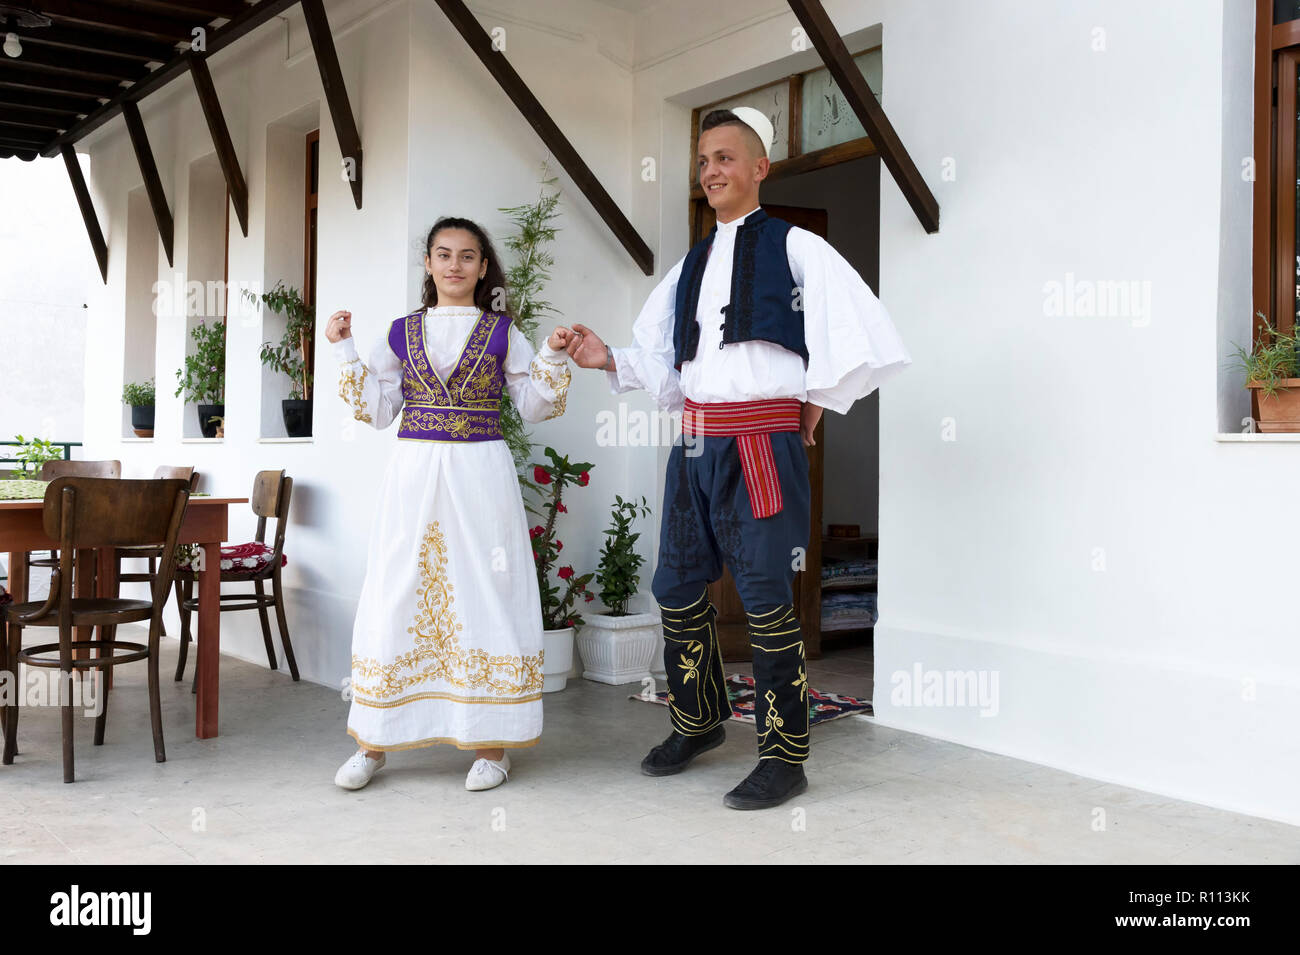 Lokale folklore gruppe in traditionellen Trachten, die nationale albanische Tanz, Berat, Albanien Stockfoto